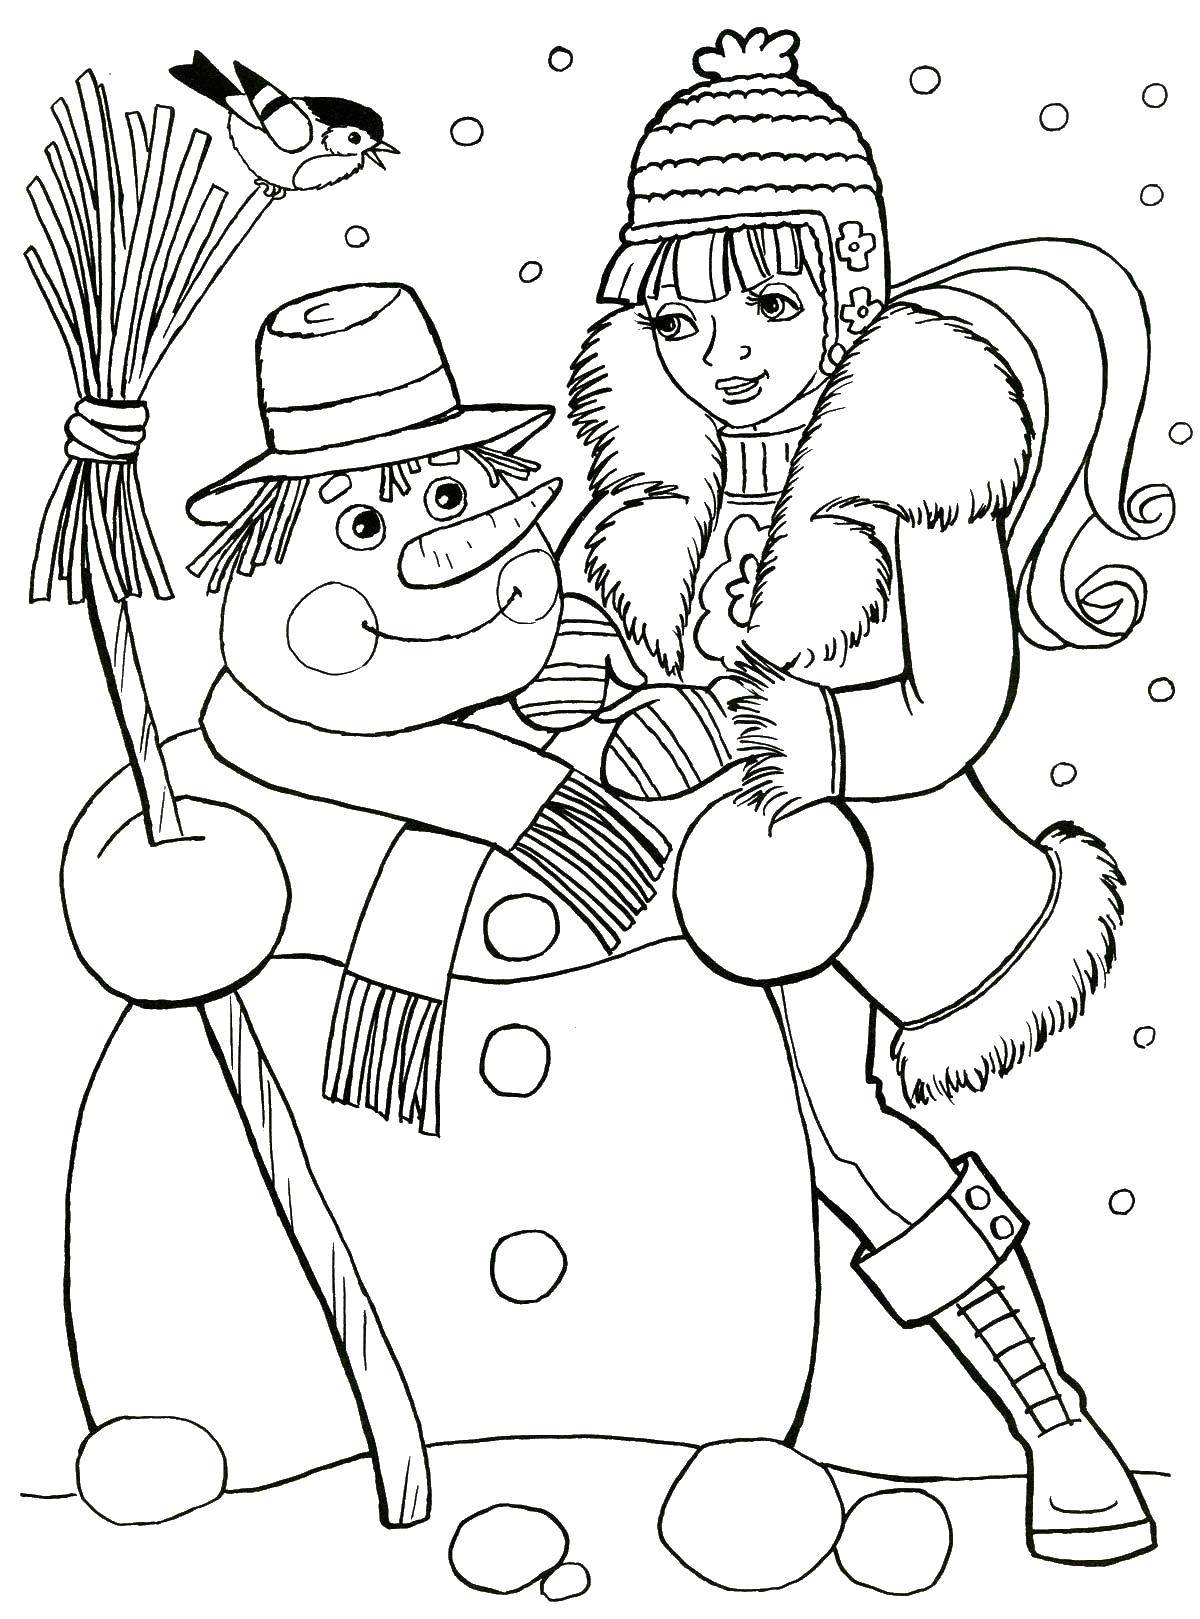 Раскраска для малышей с изображением снеговика, веника и девочки. (девочка)